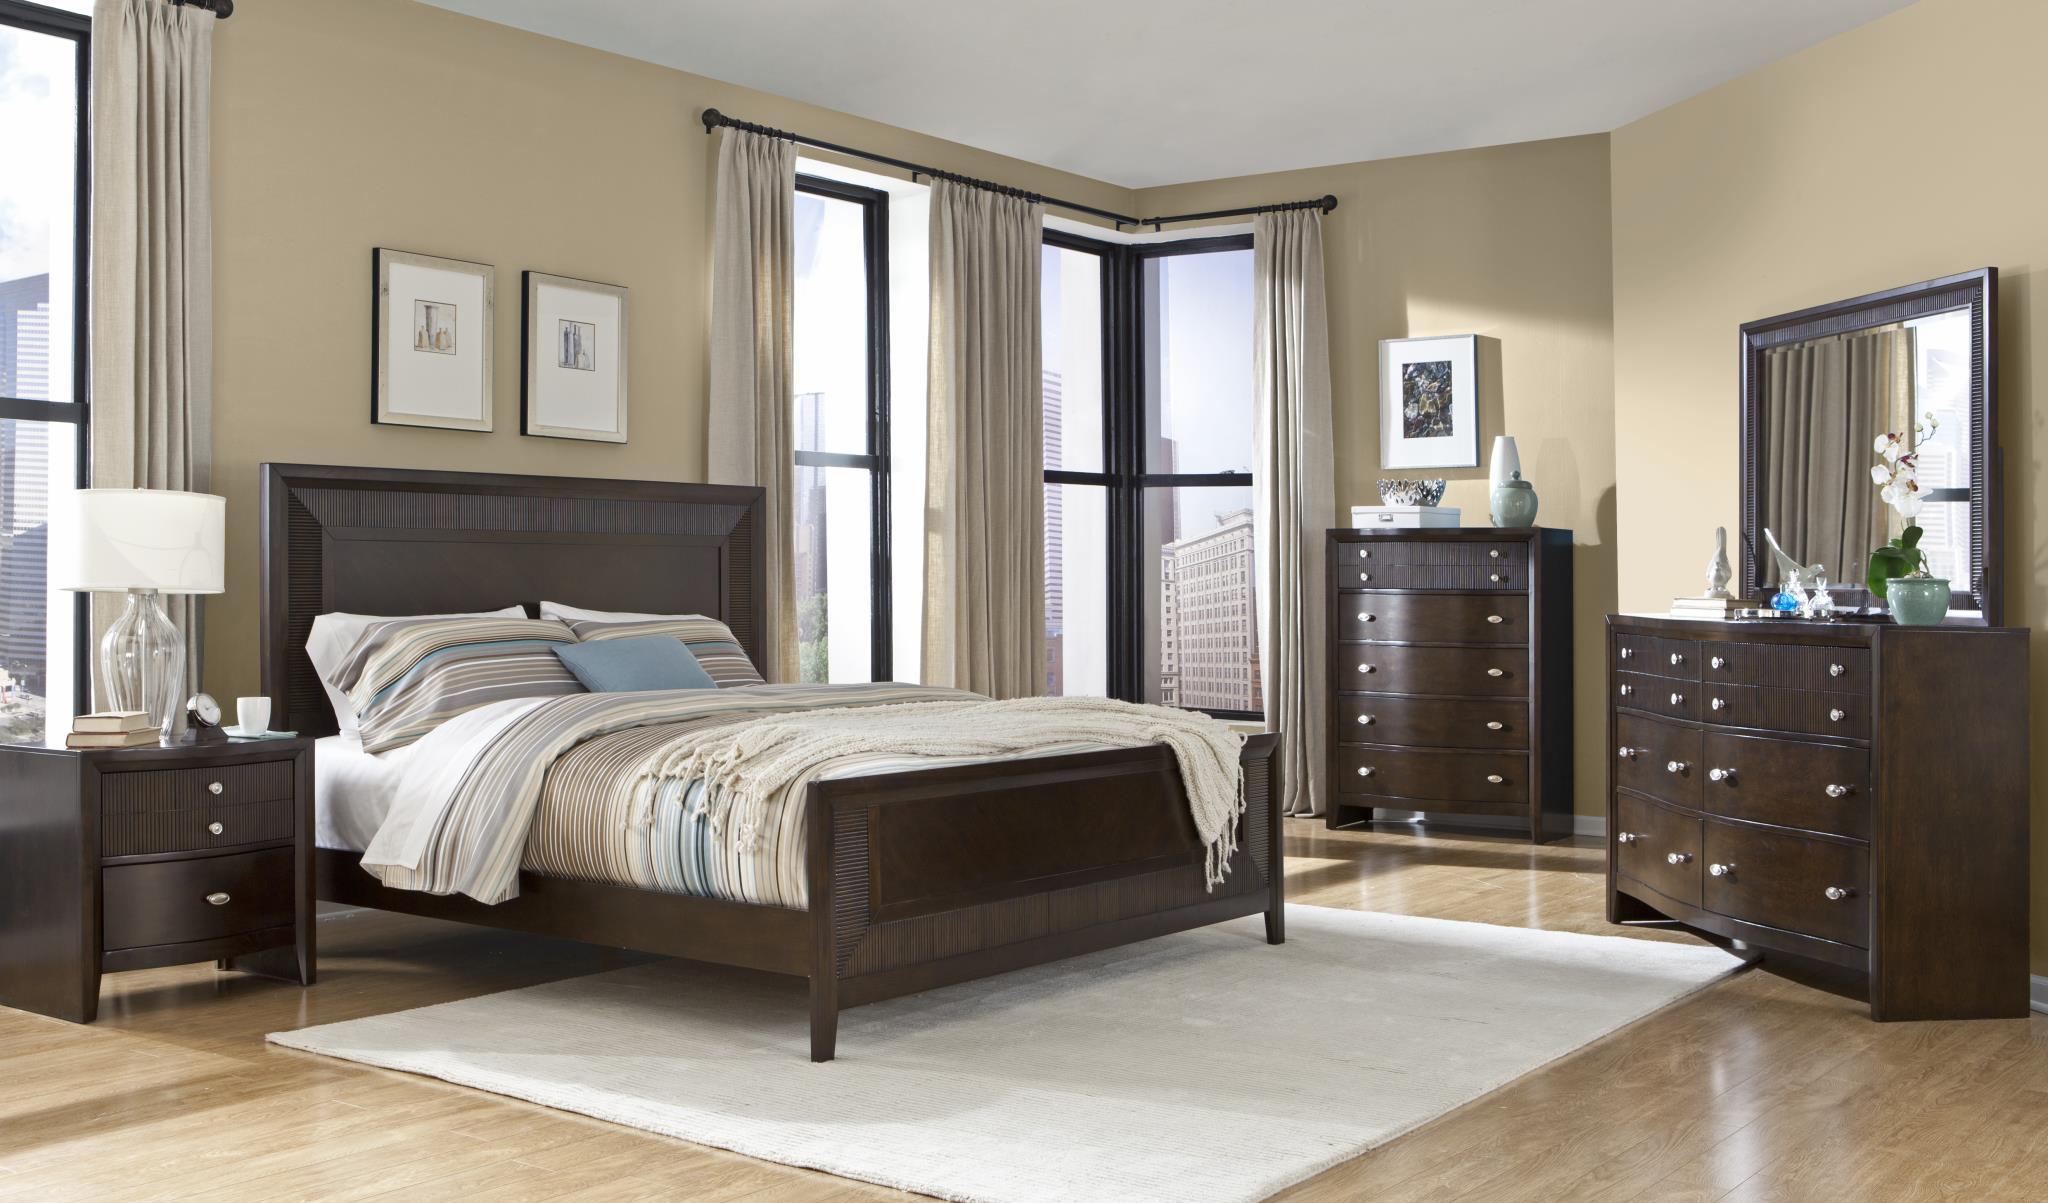 

    
Soflex Elora Espresso Finish Ribbed Wood Queen Bedroom Set 3Pcs Contemporary
